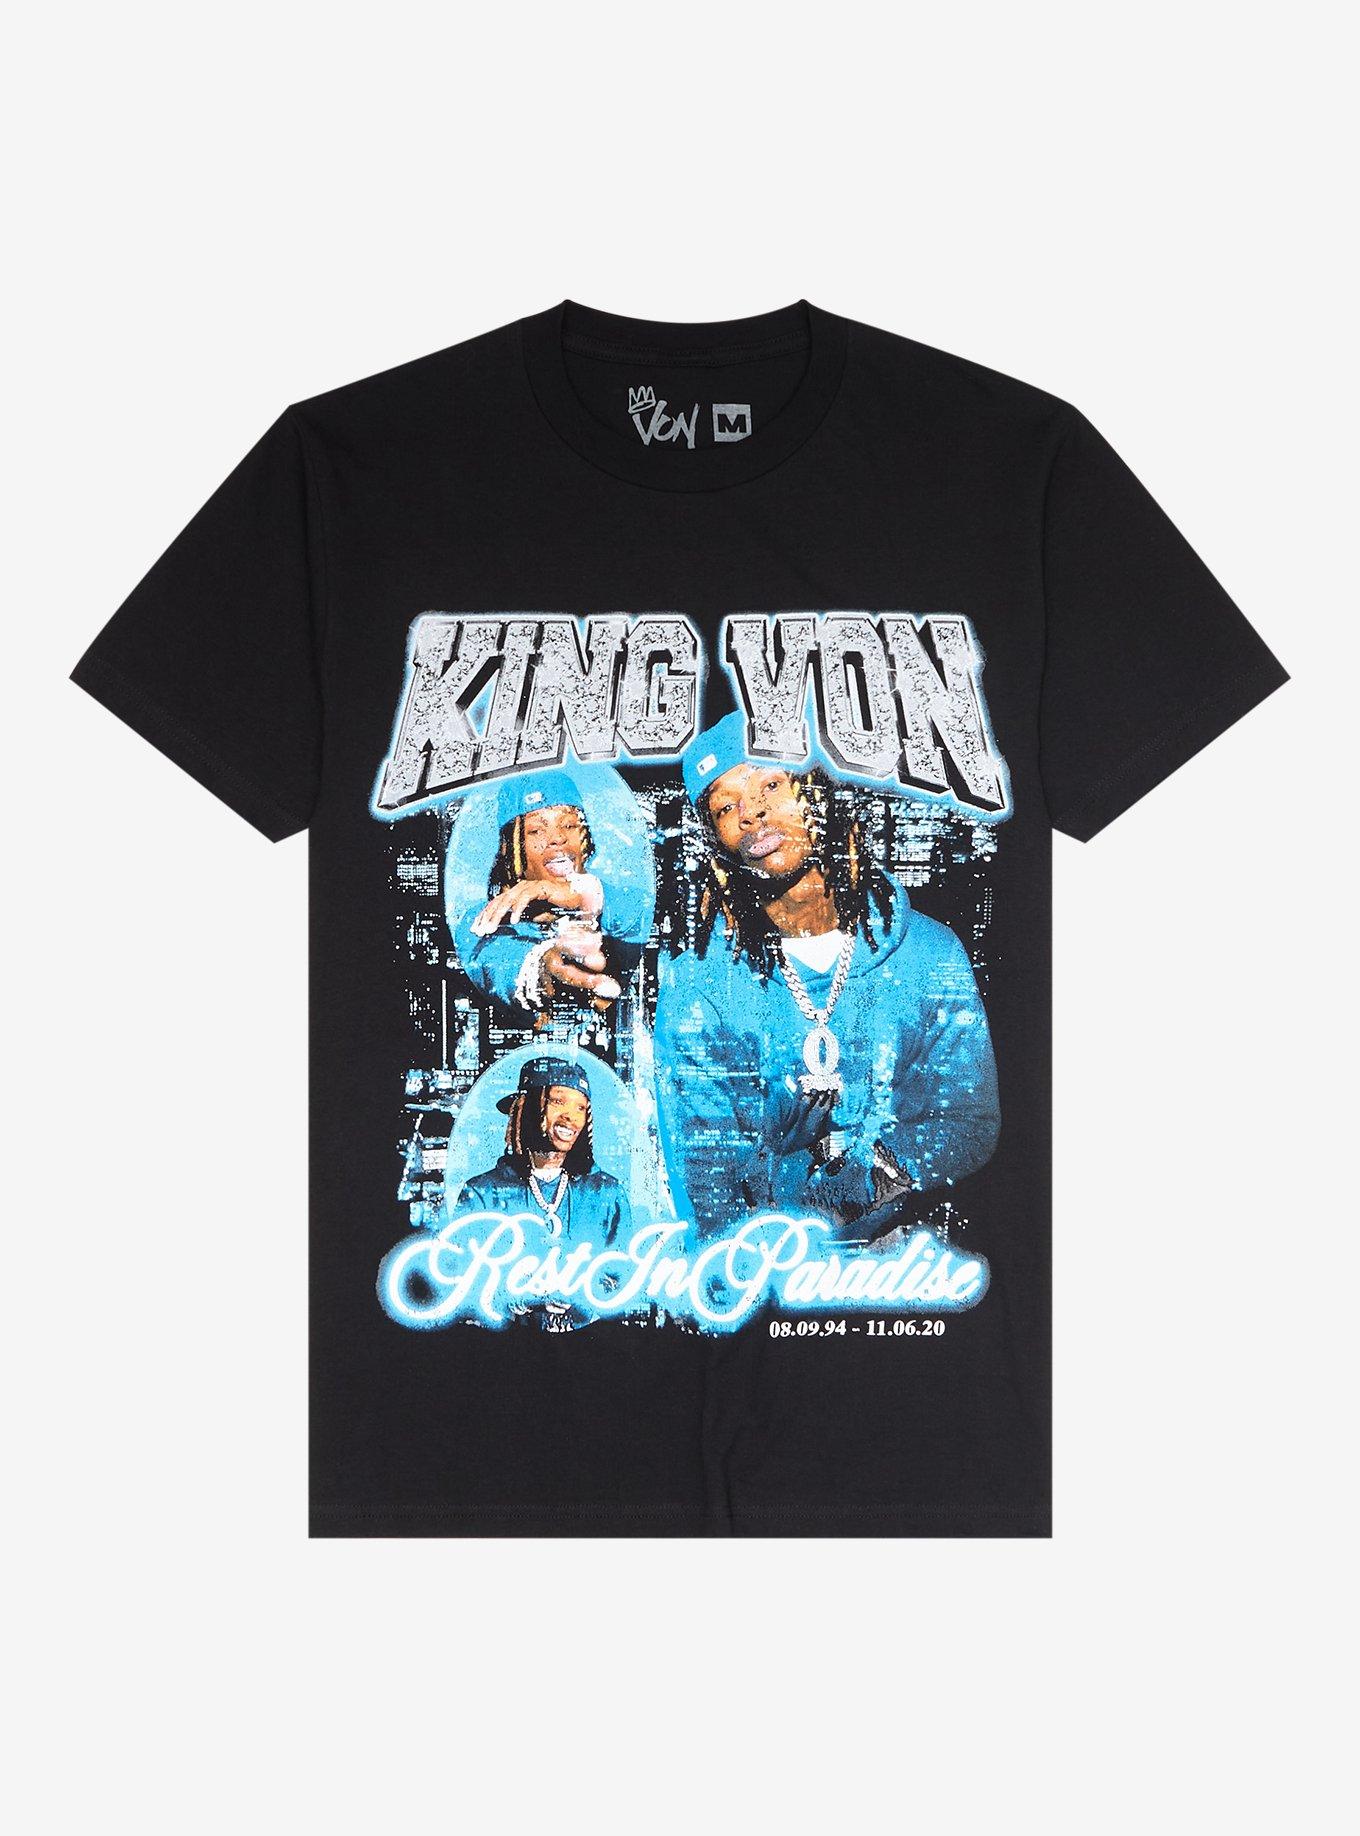 King Von Photo Collage T-Shirt